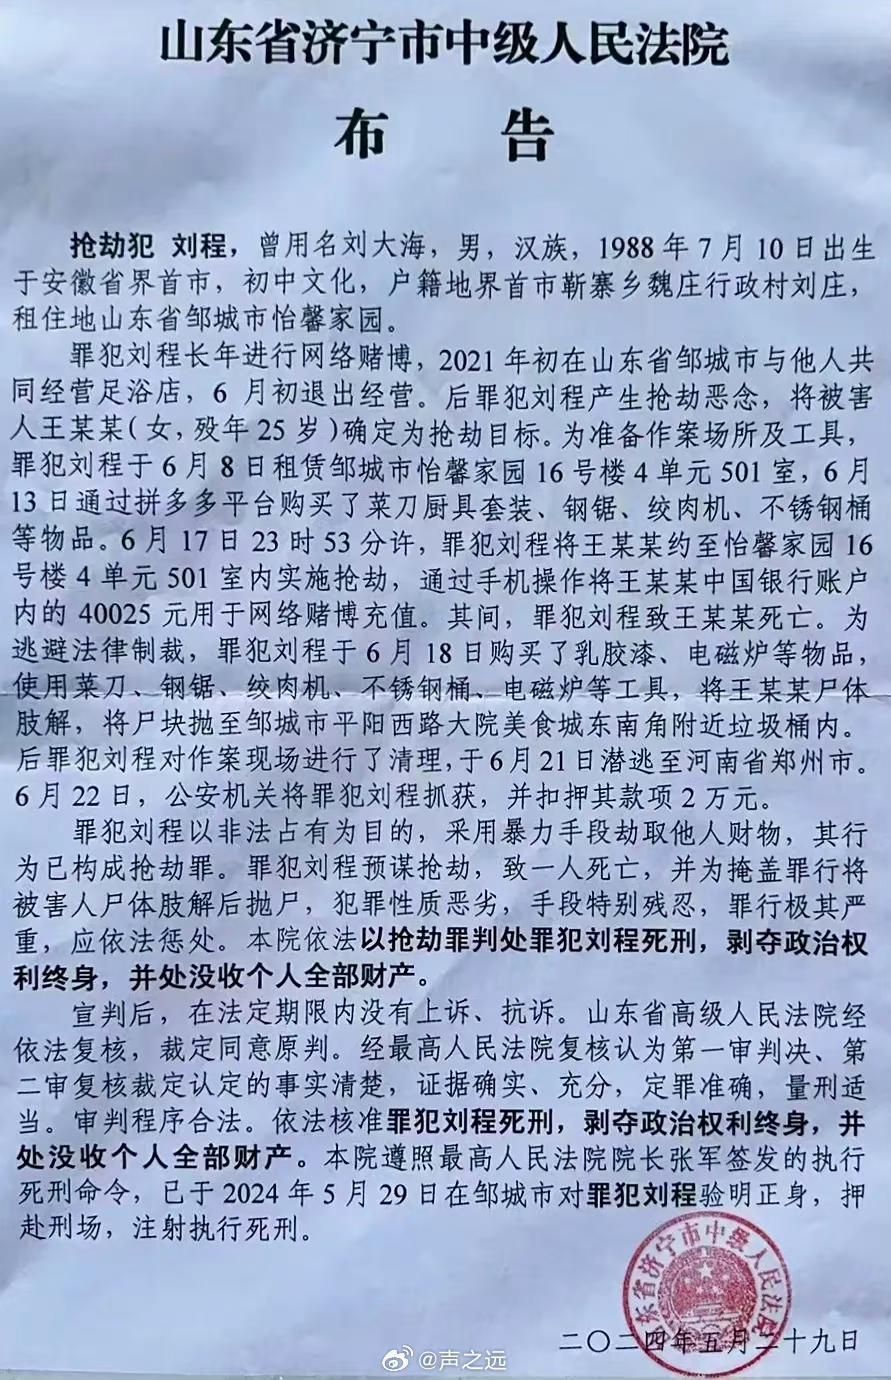 法院公告，搶劫犯劉程29日在鄒城被執行死刑。